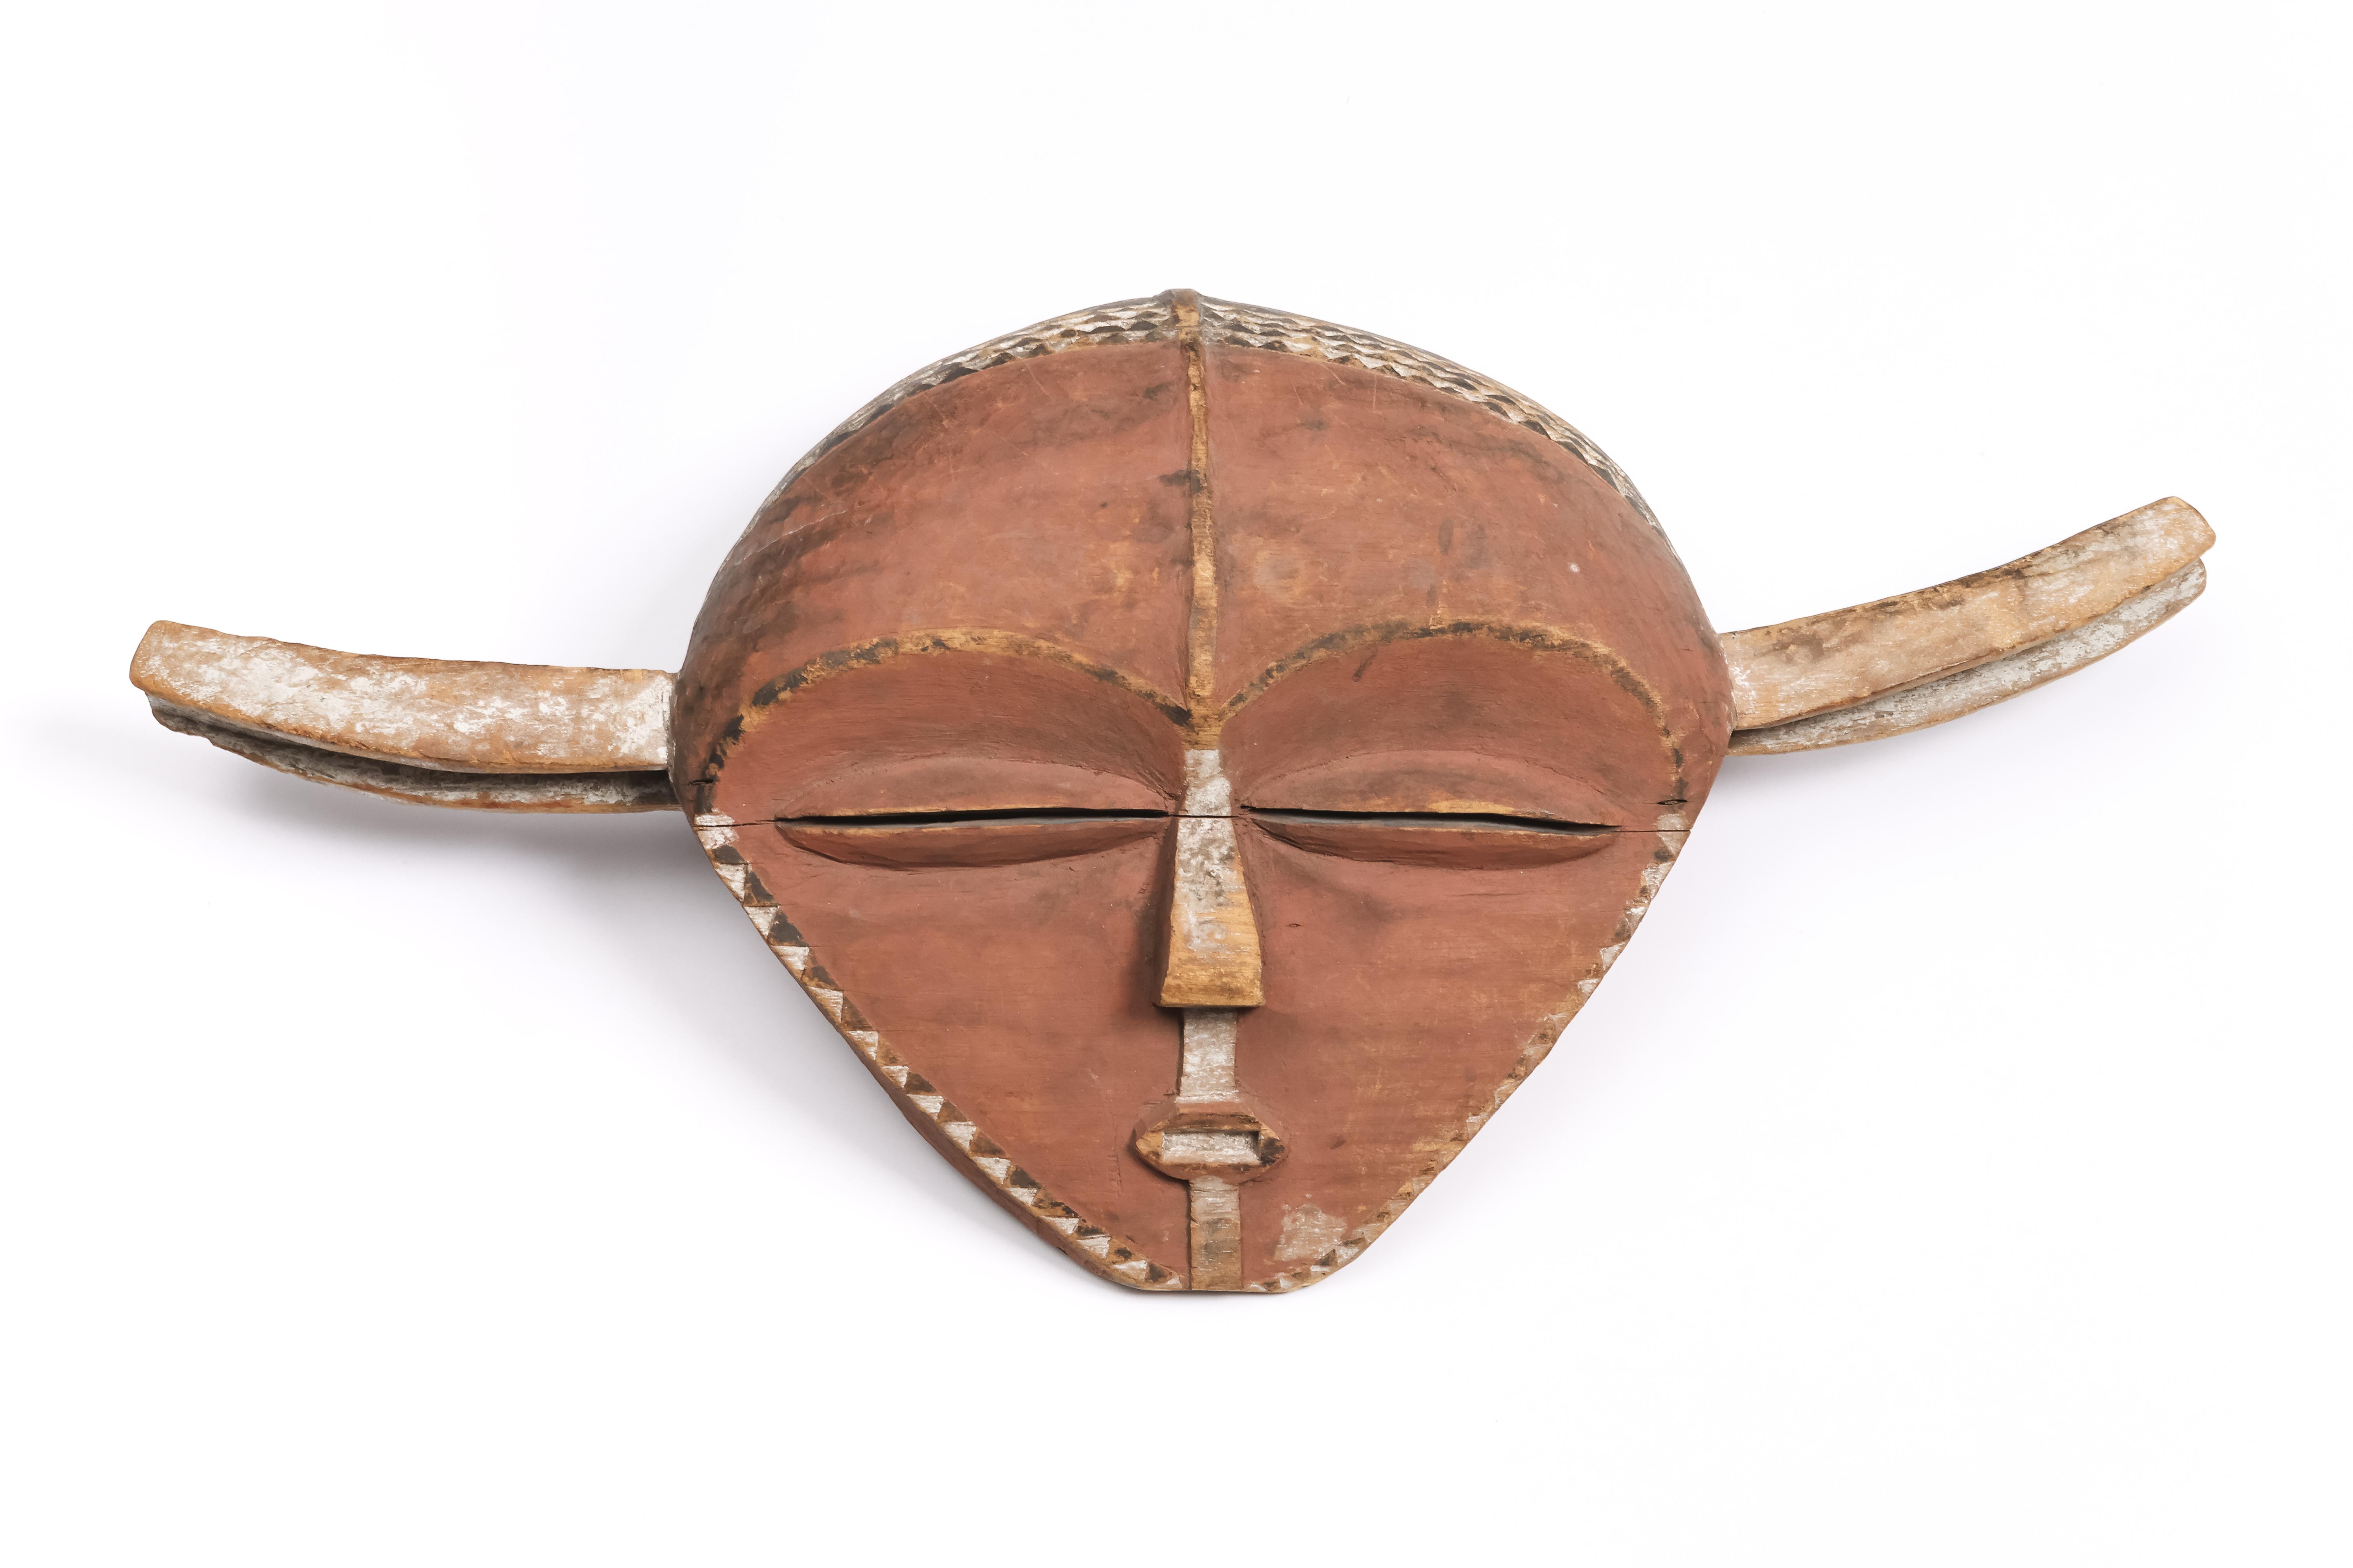 D.R. Congo, Eastern Pende, panya ngombe mask, - Image 4 of 5